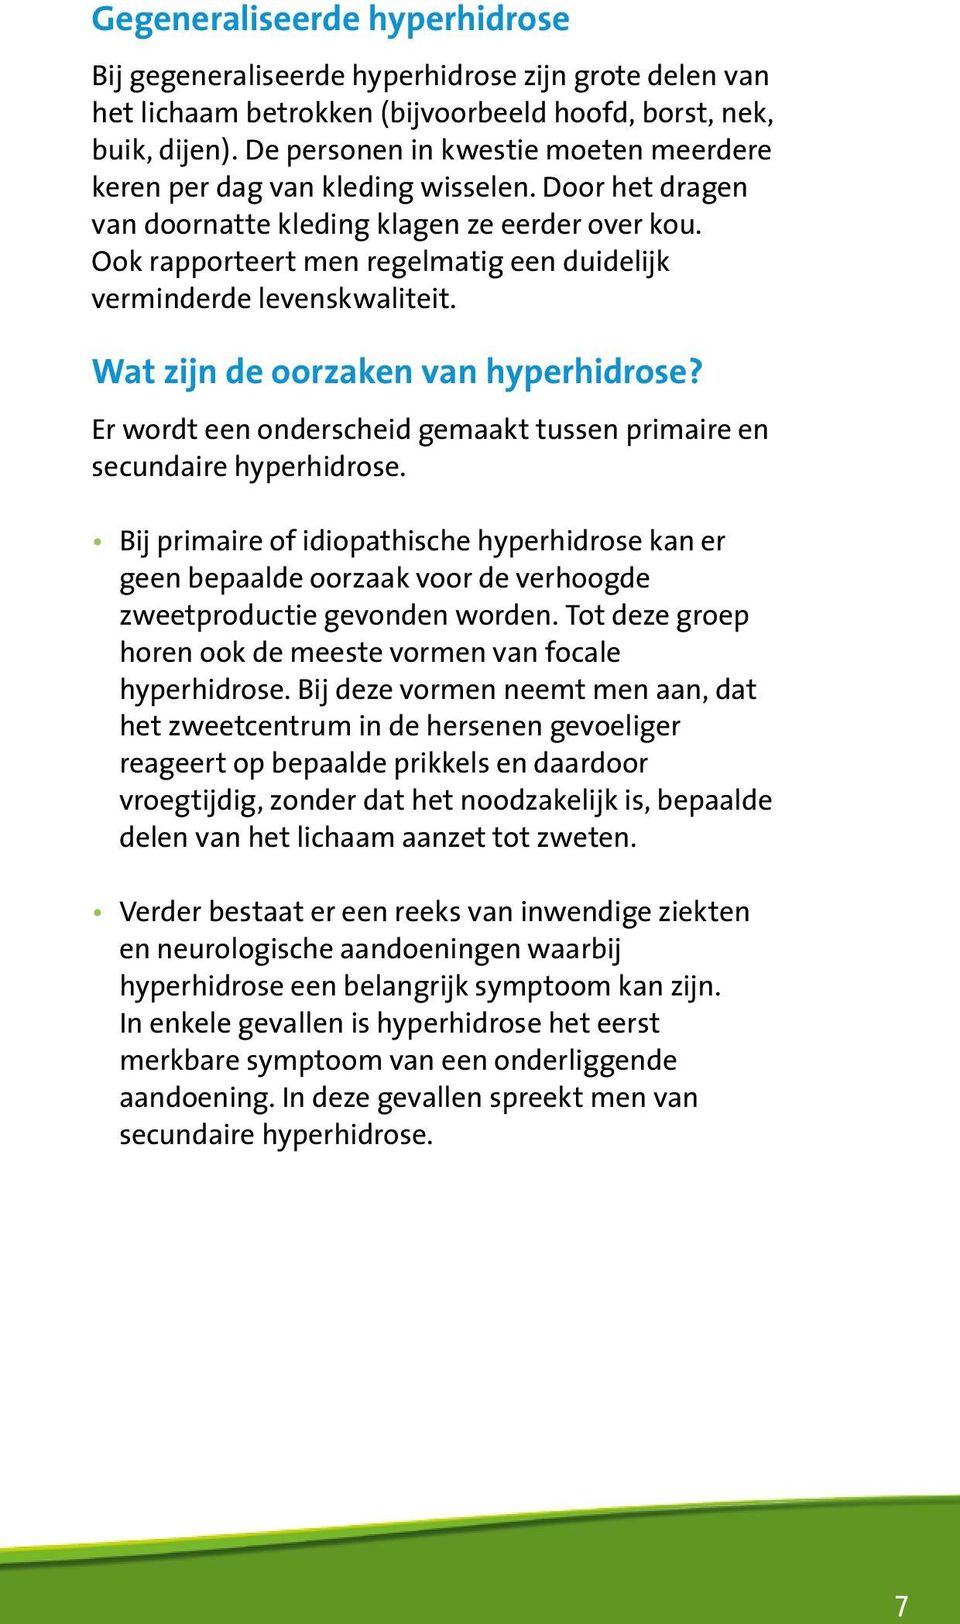 Ook rapporteert men regelmatig een duidelijk verminderde levenskwaliteit. Wat zijn de oorzaken van hyperhidrose? Er wordt een onderscheid gemaakt tussen primaire en secundaire hyperhidrose.